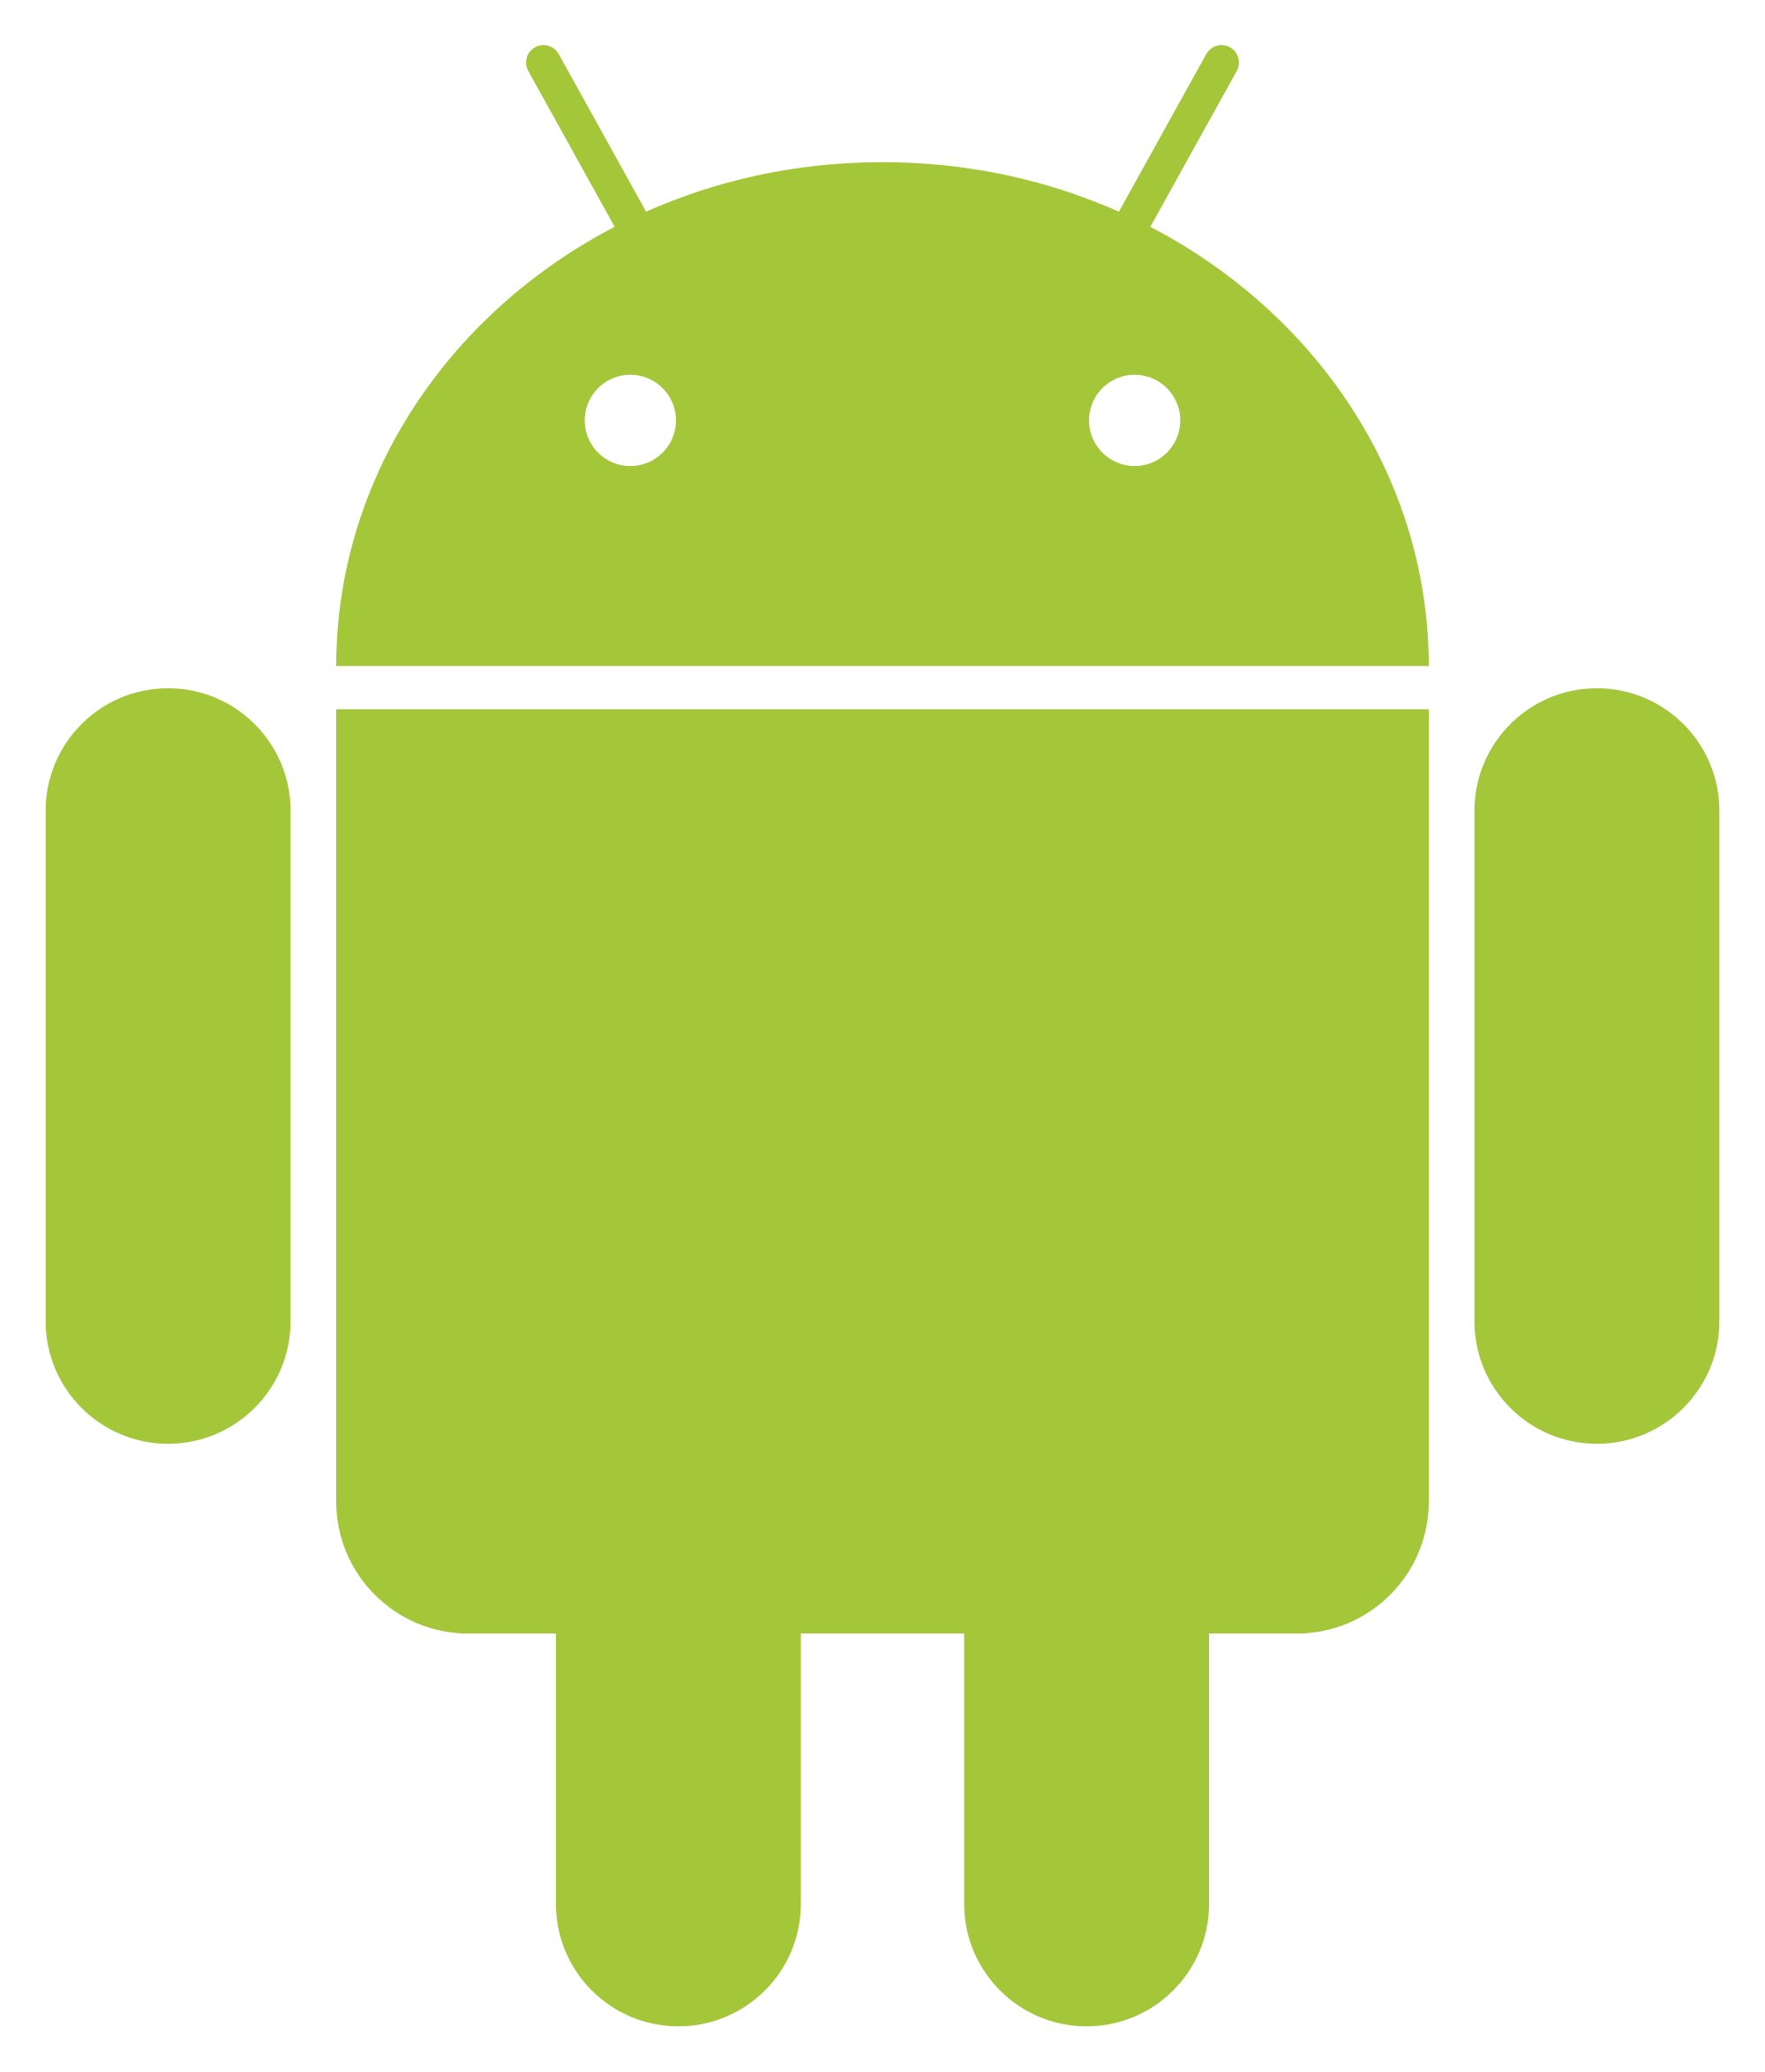 Андроид. Символ андроид. Значок Android. Логотип андроид вектор. Как рисовать в тг на андроид